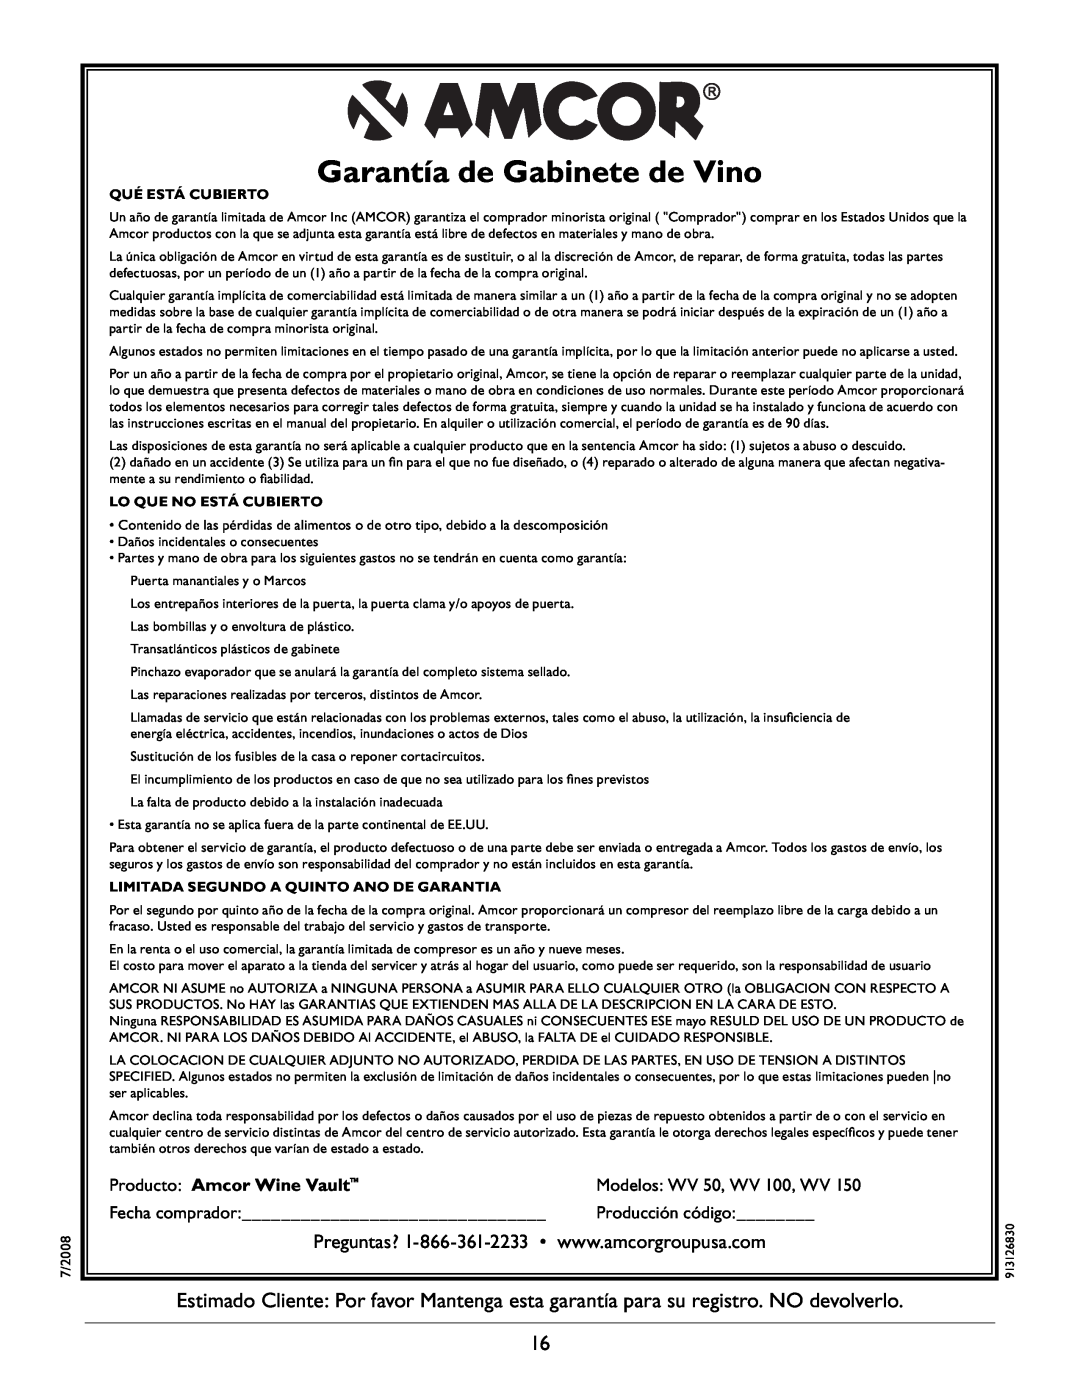 Amcor WV 50 Garantía de Gabinete de Vino, Producto Amcor Wine Vault, Qué Está Cubierto, Lo Que No Está Cubierto 